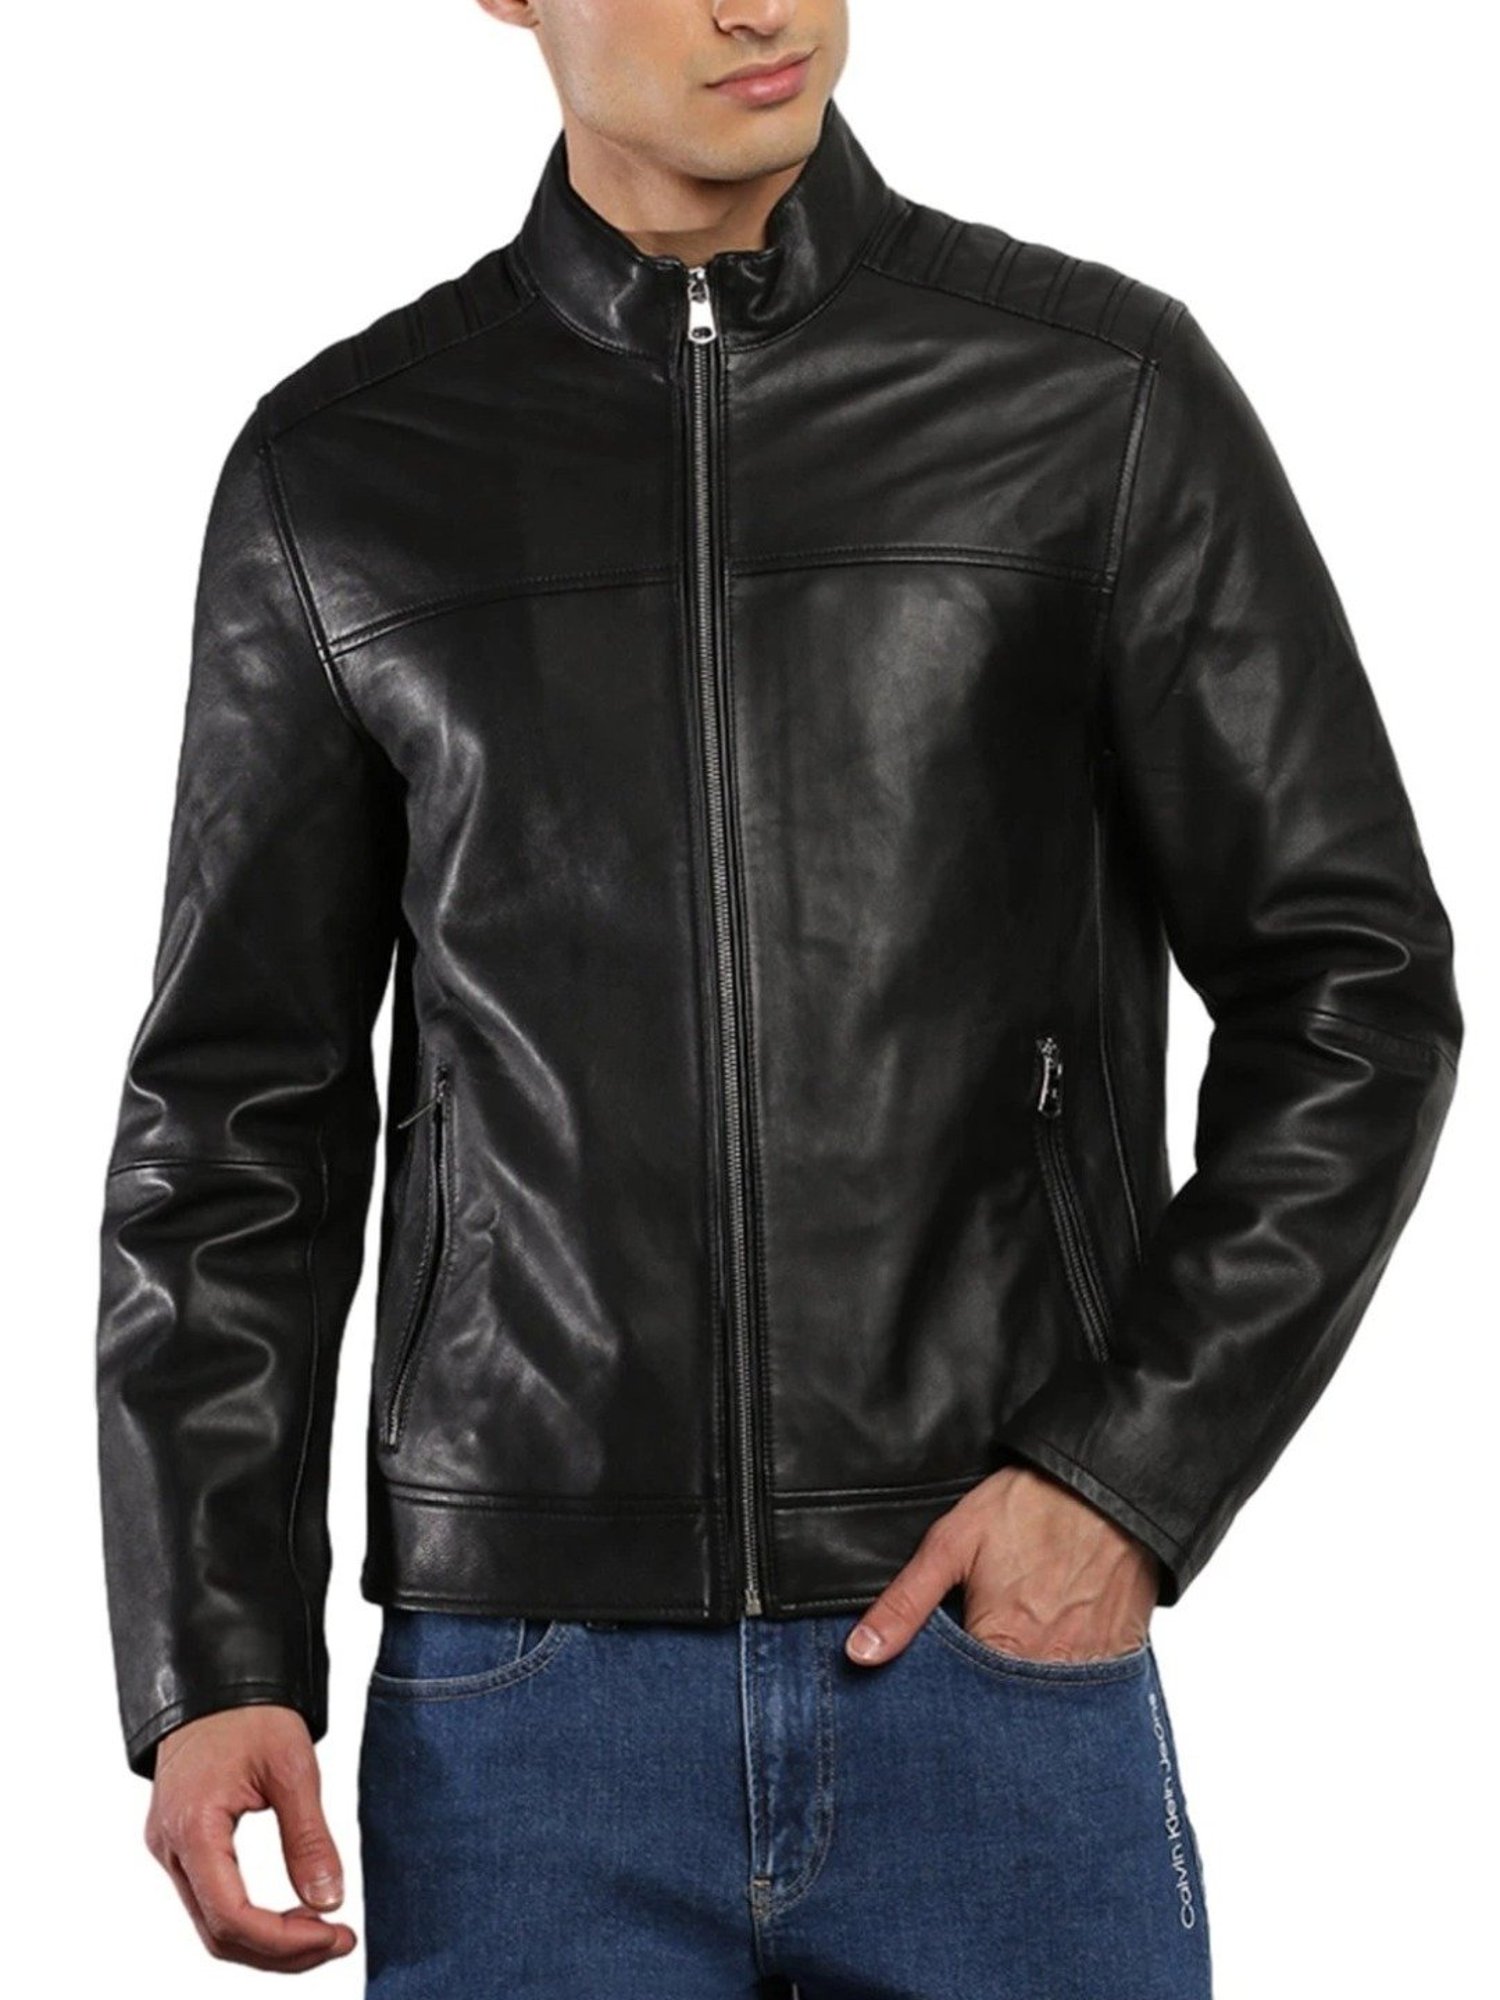 2 XL Men's Calvin Klein Brown Leather Jacket | eBay